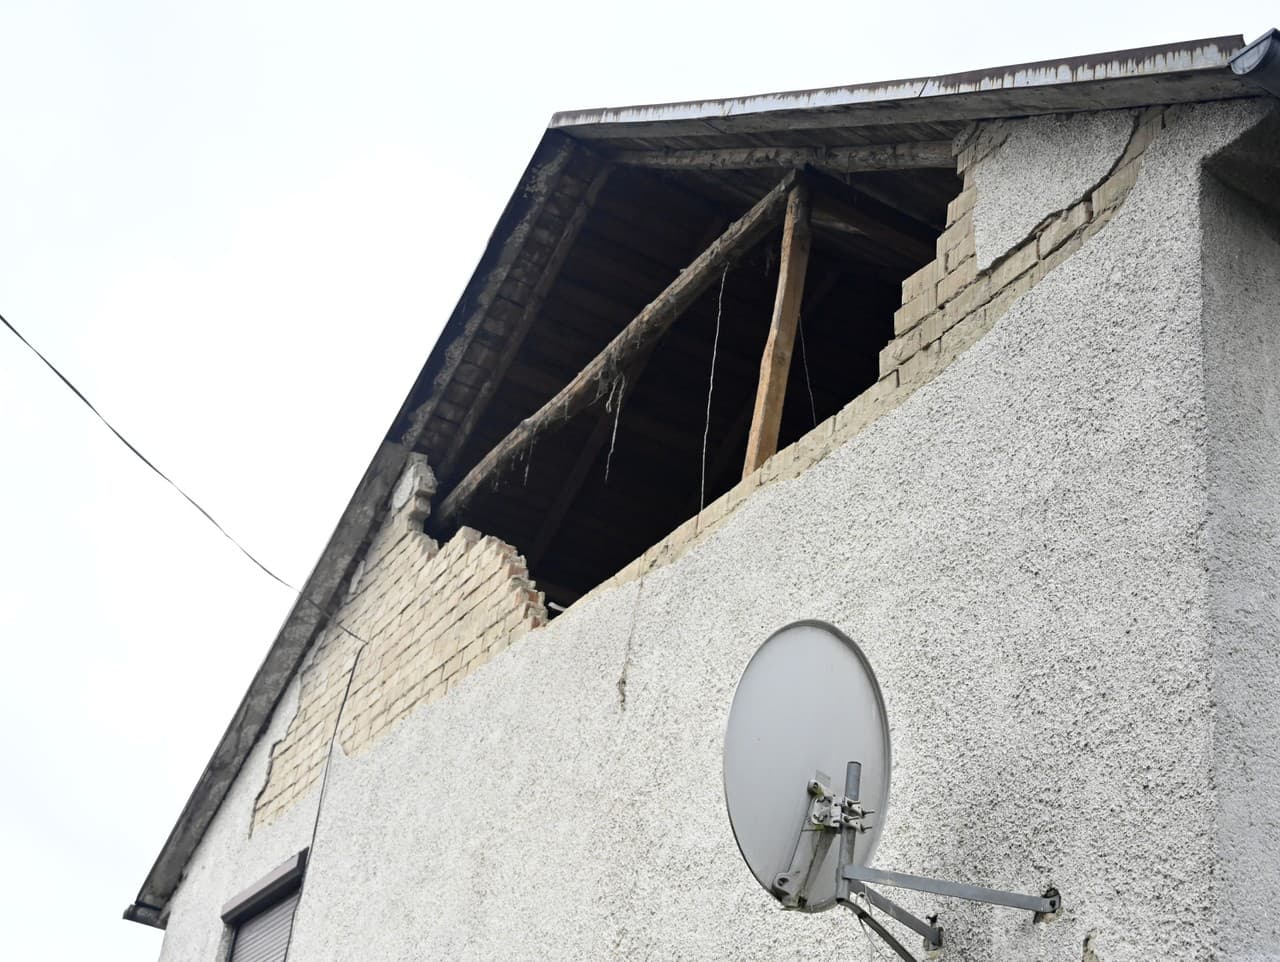 Zemetrasenie v Baškovciach poškodilo budovy